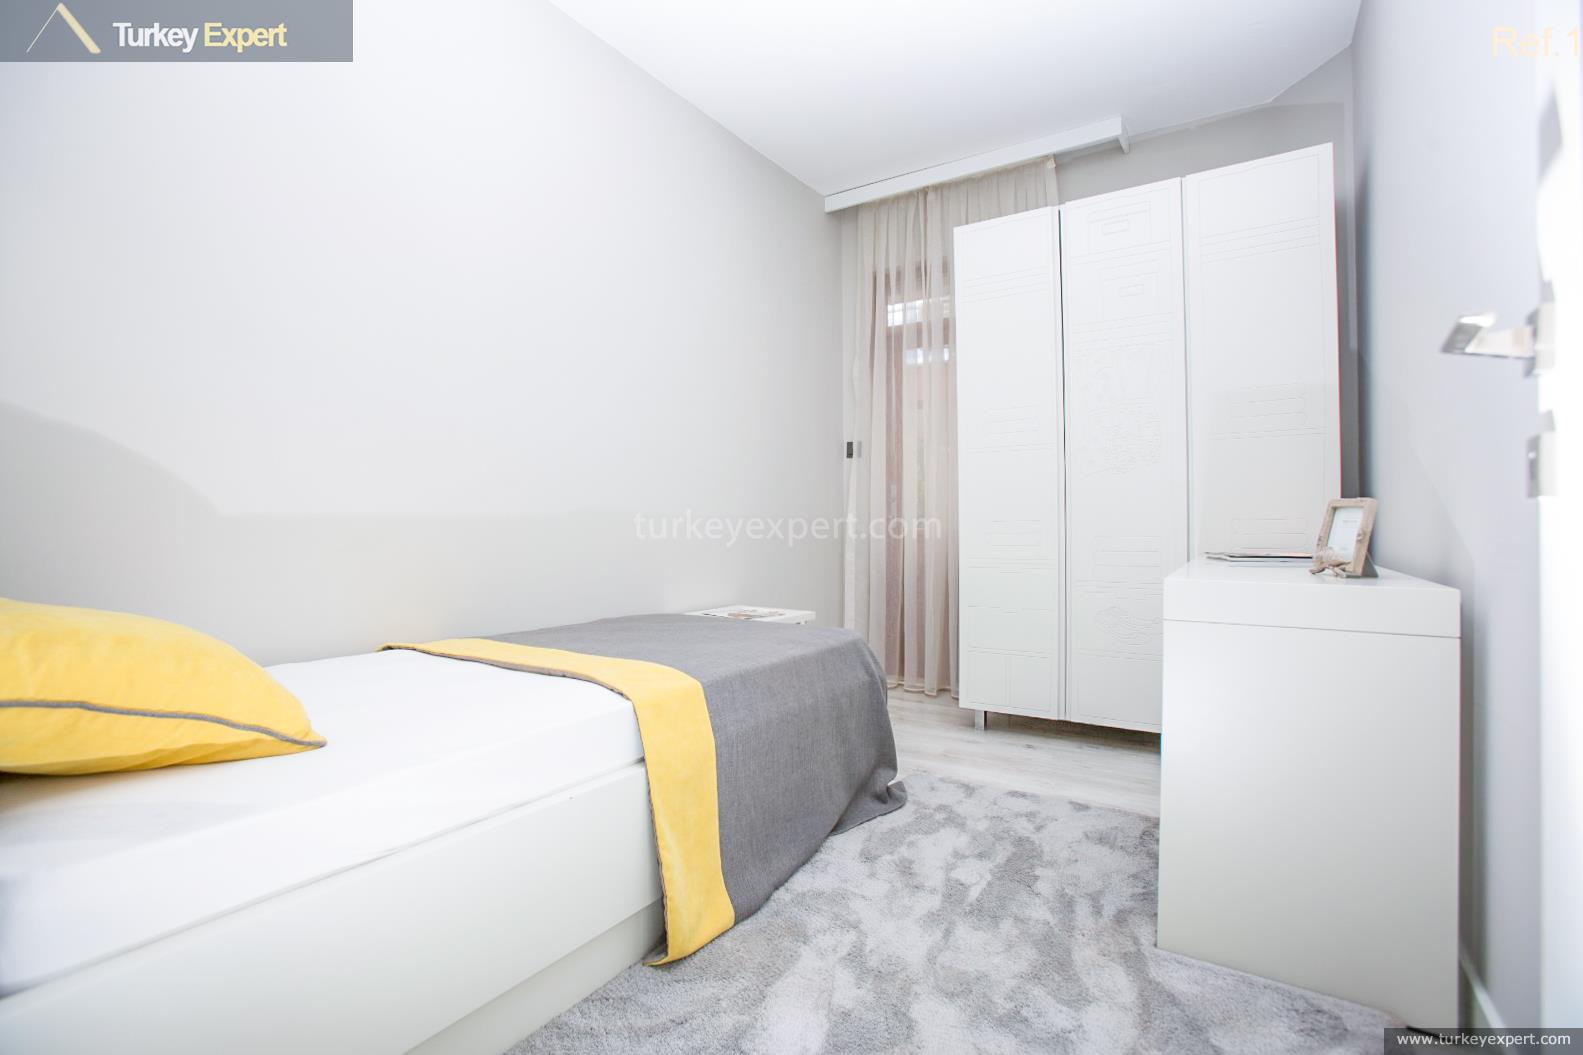 antalya lara property with a bright and spacious interior at26.